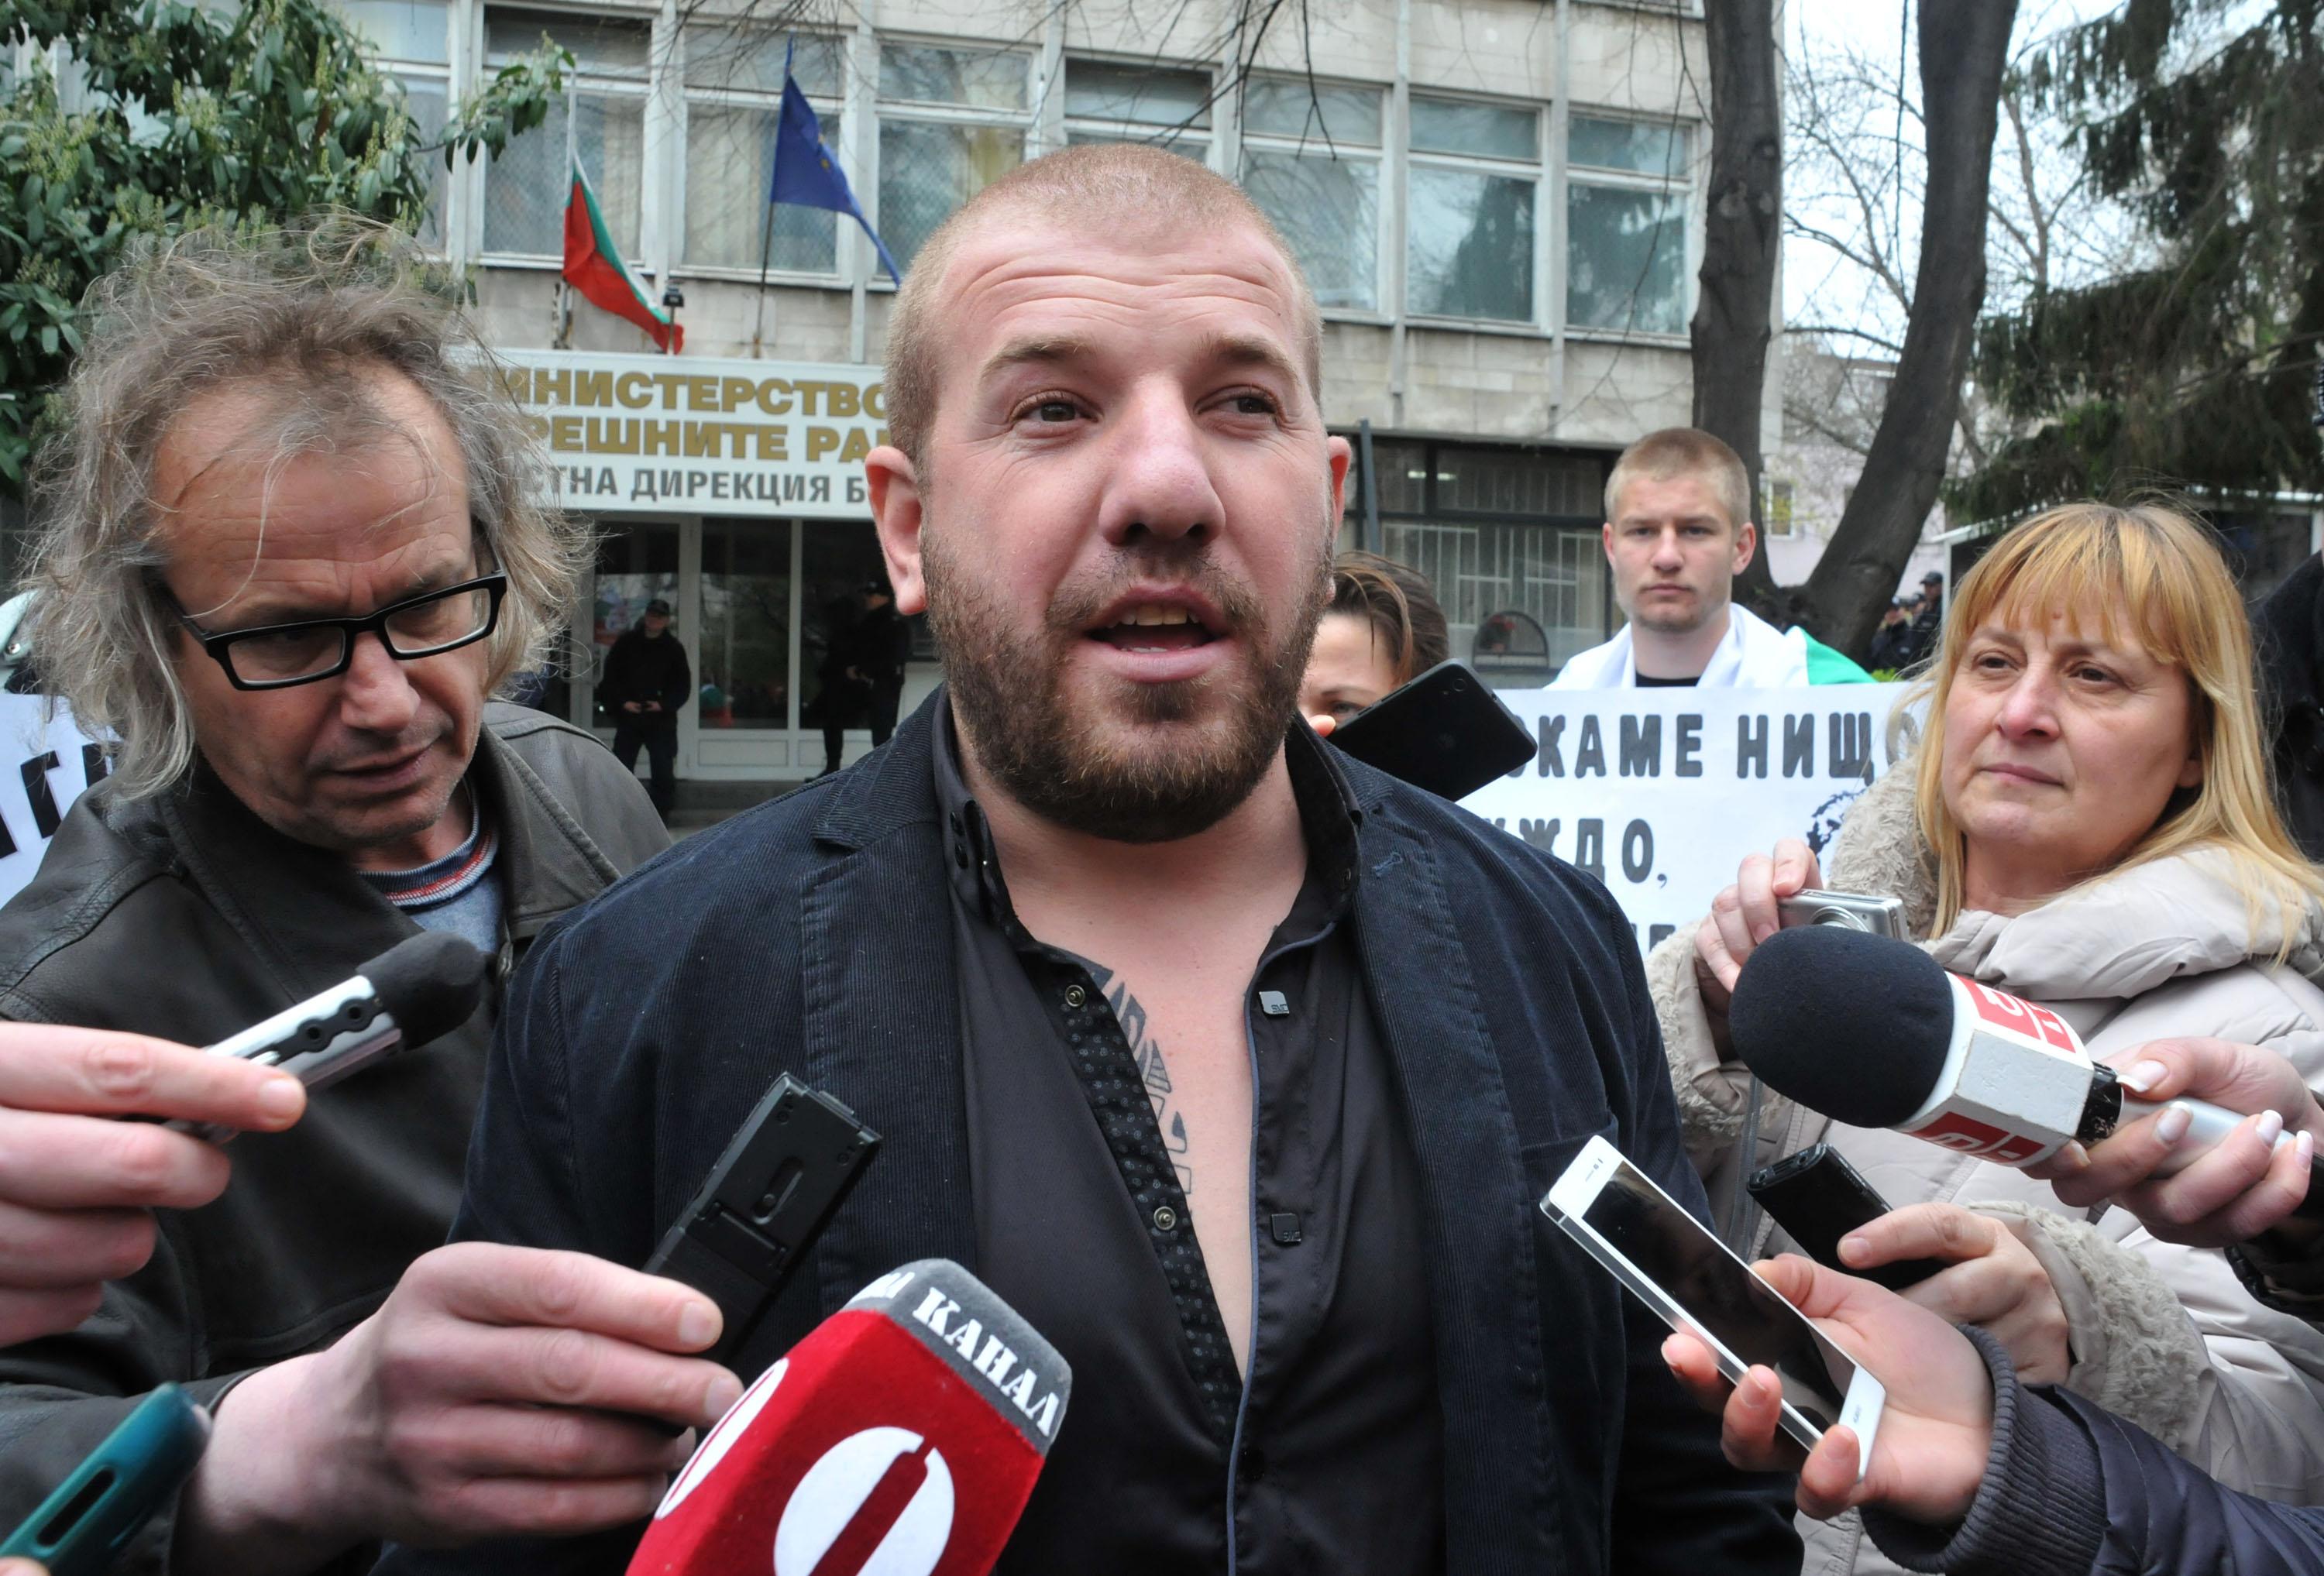 Динко Вълев от Ямбол беше на разпит в Областна дирекция на полицията